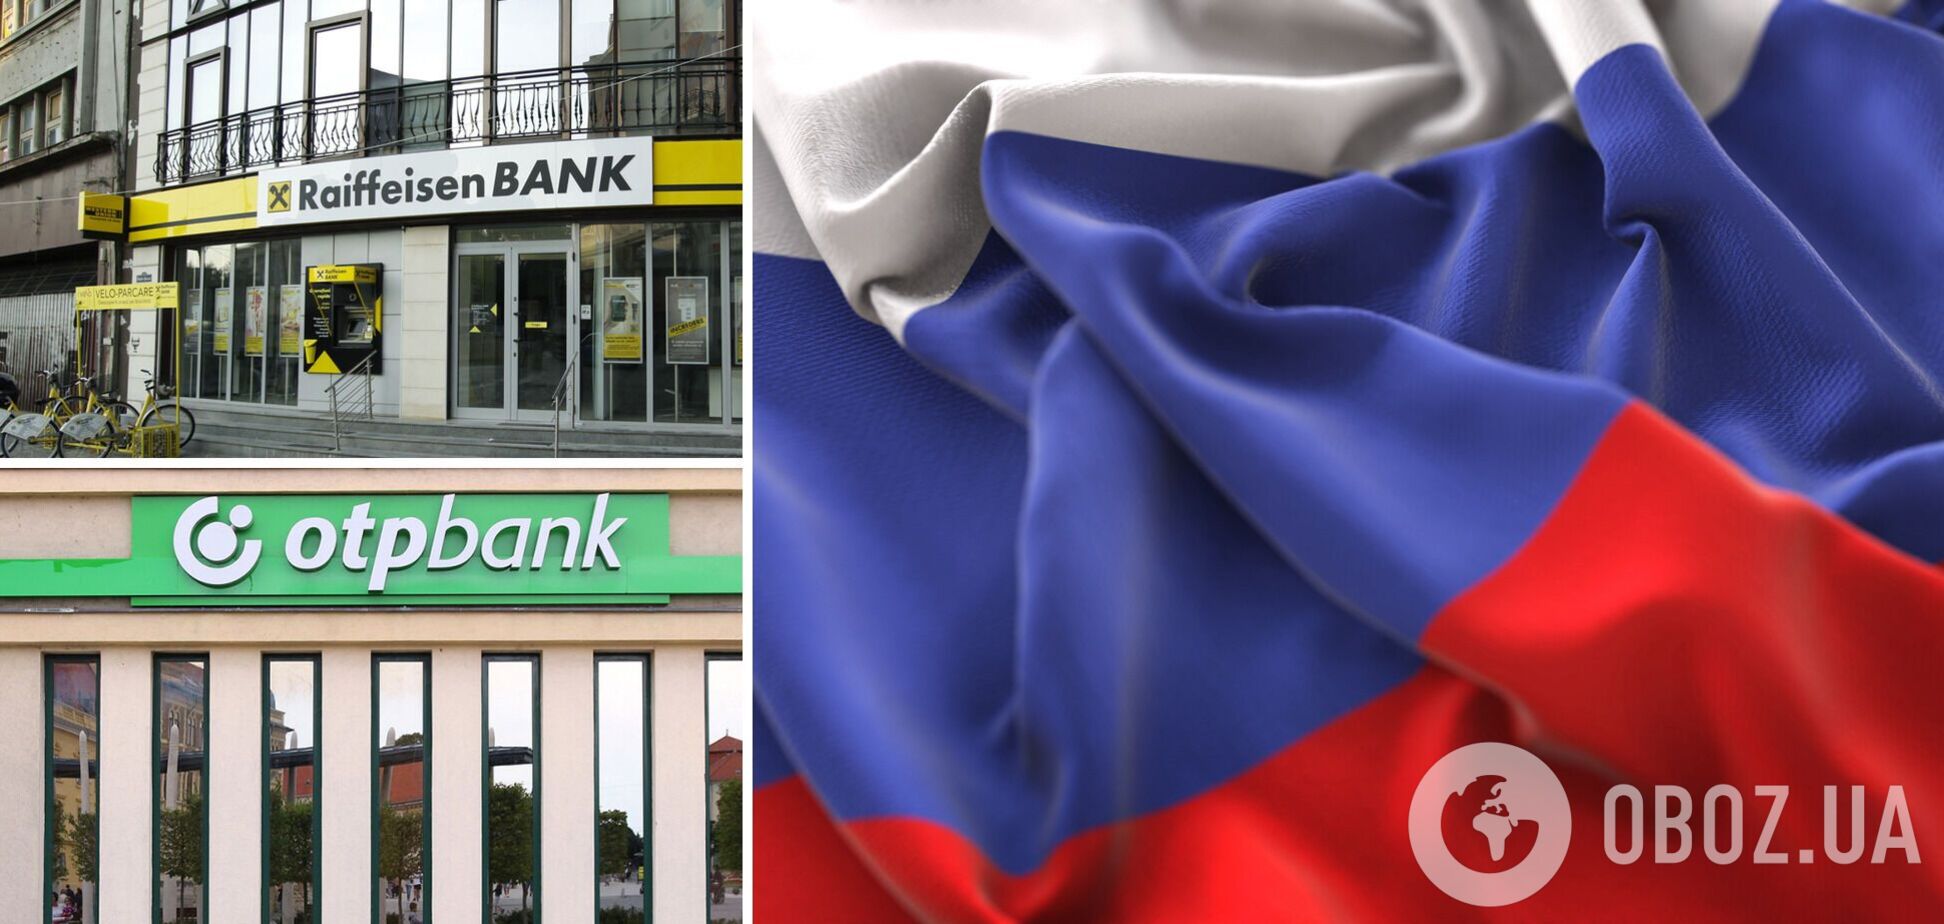 НБУ требует выхода иностранных банков из РФ